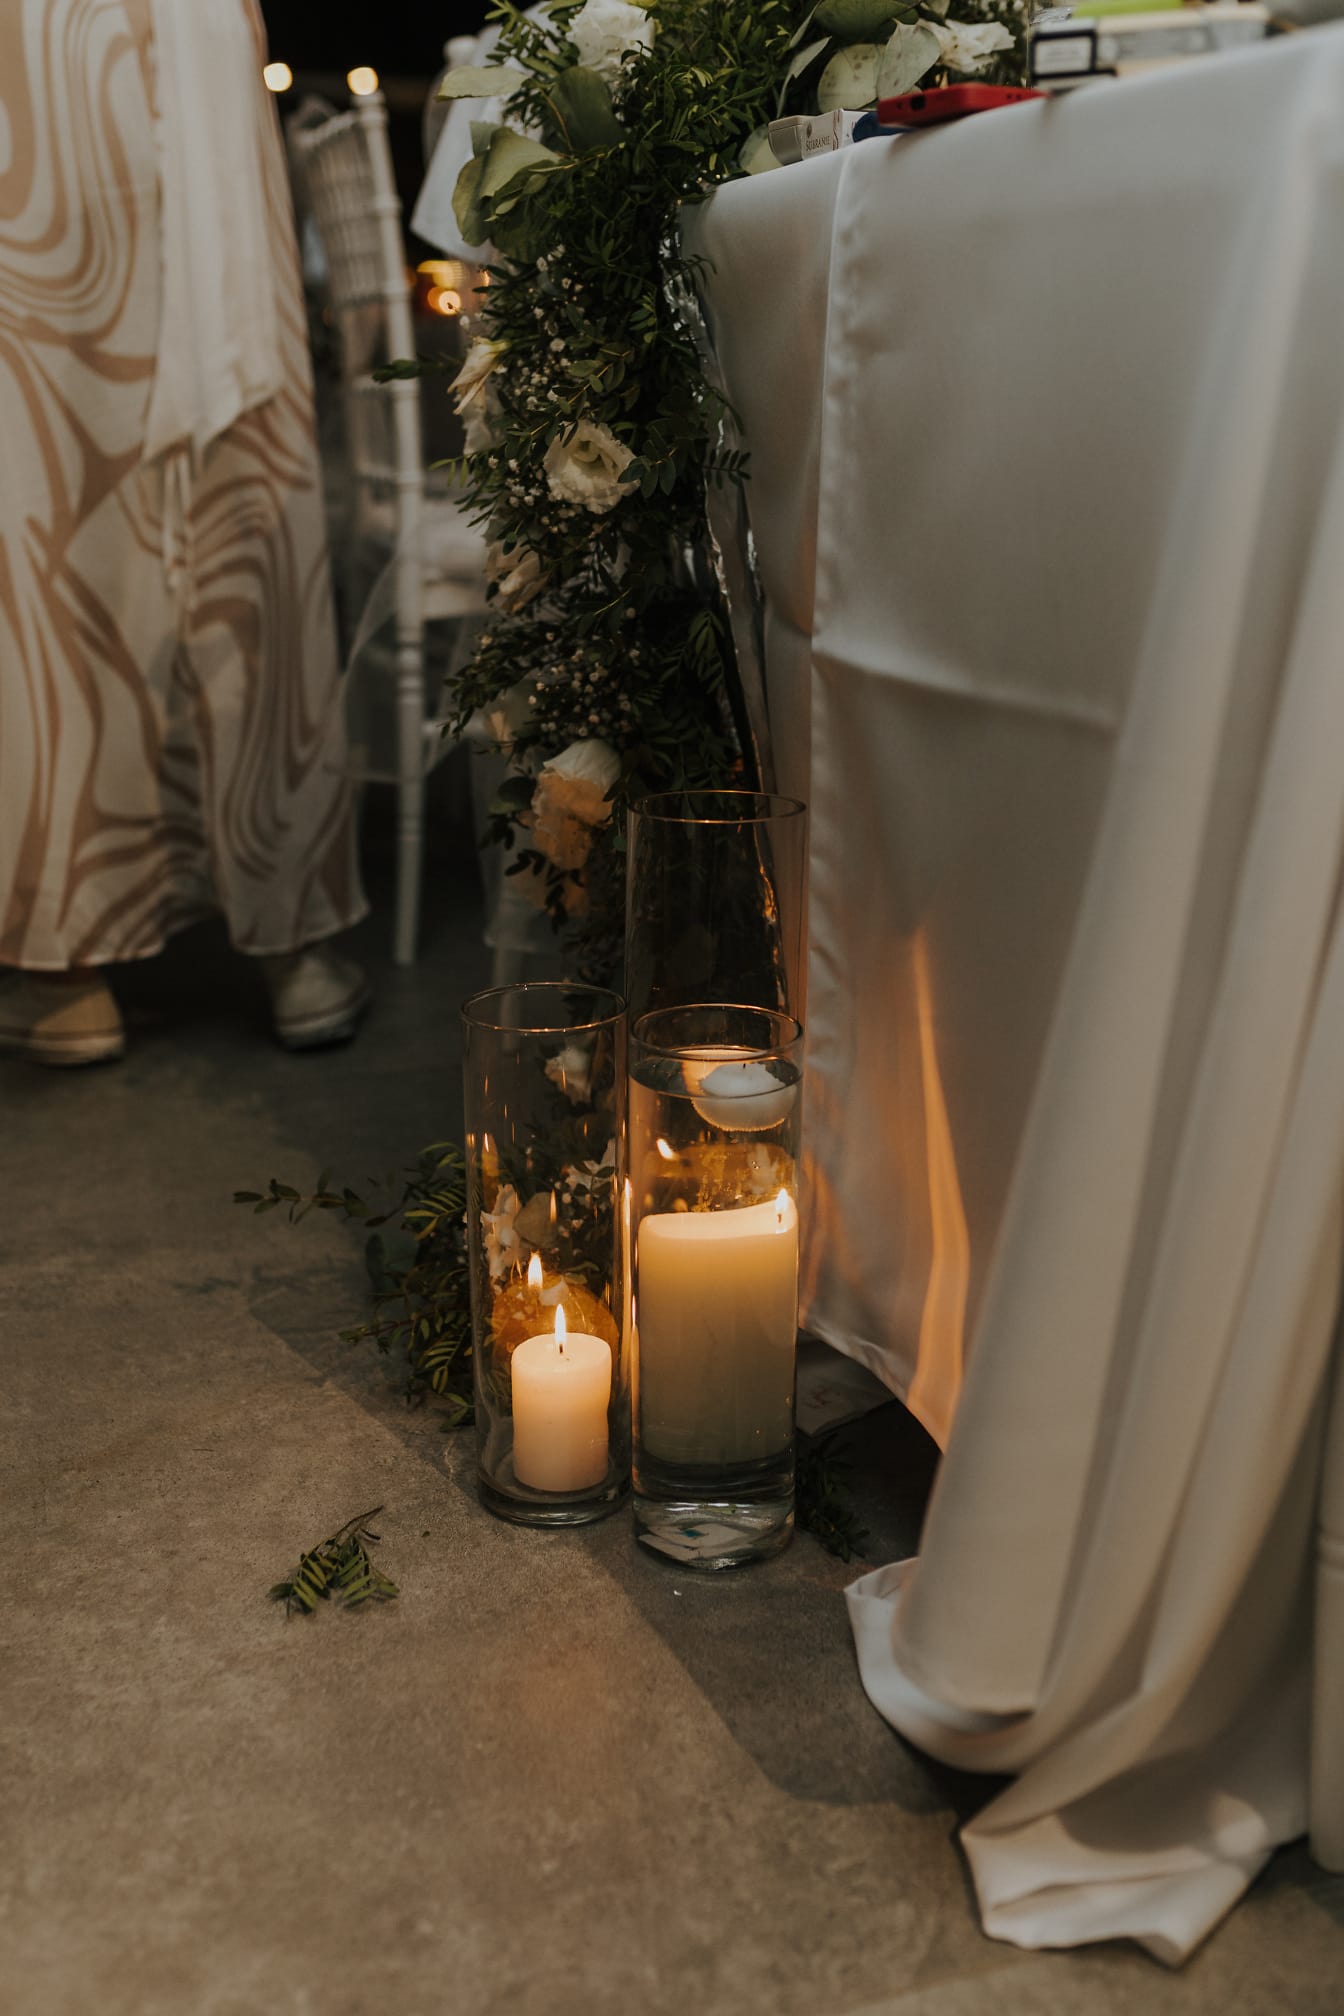 Lilin putih elegan dalam vas kaca di tempat pernikahan